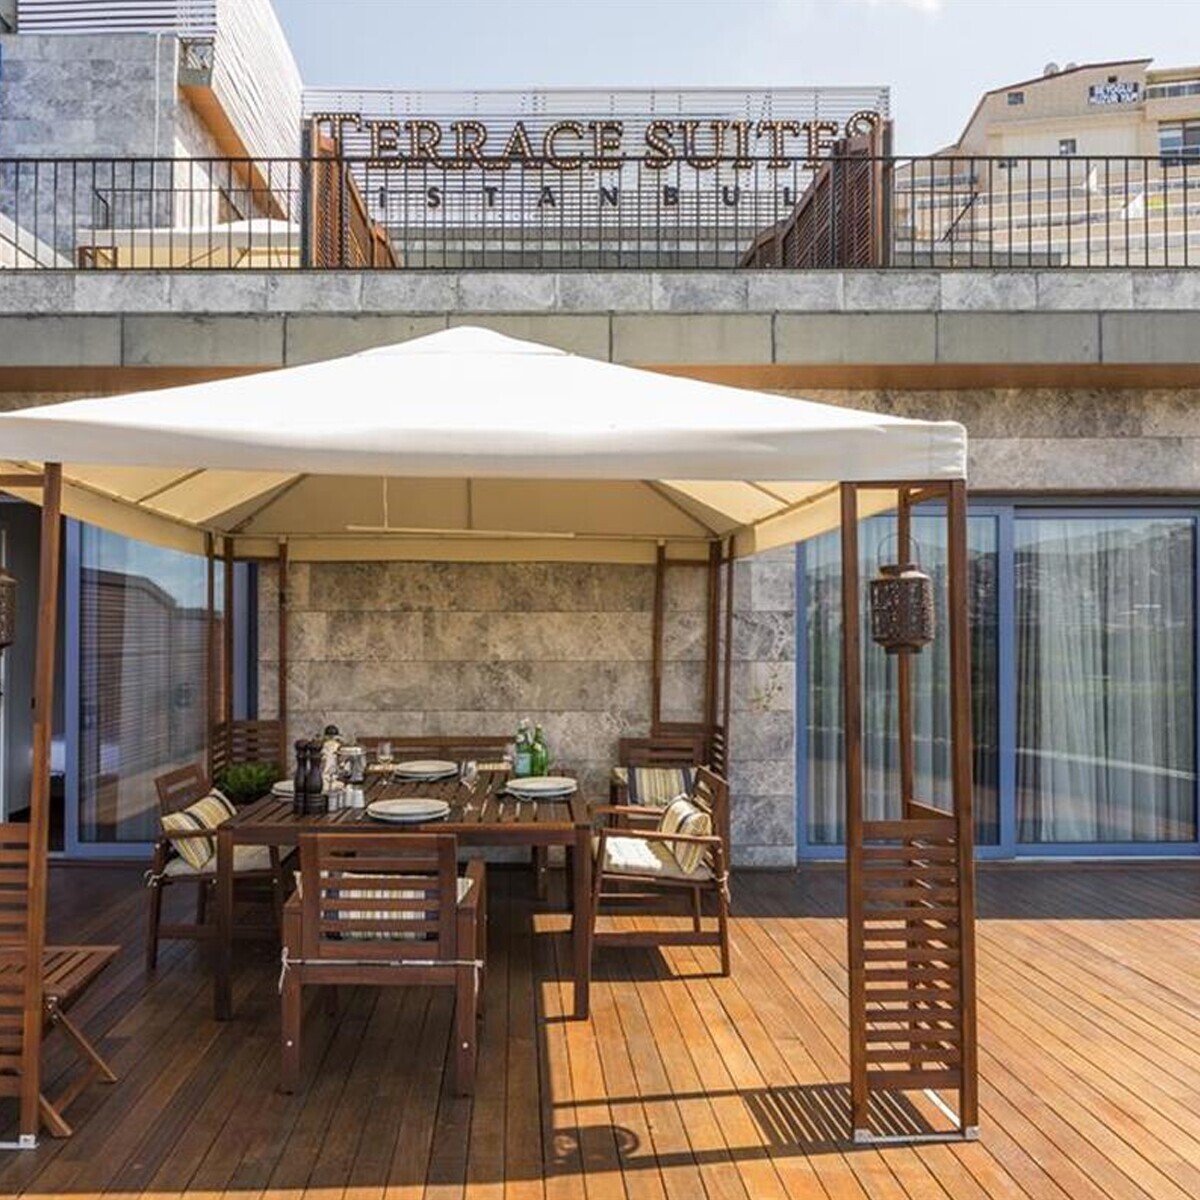 Terrace Suites Istanbul'da Tek veya Çift Kişilik Konaklama Seçenekleri